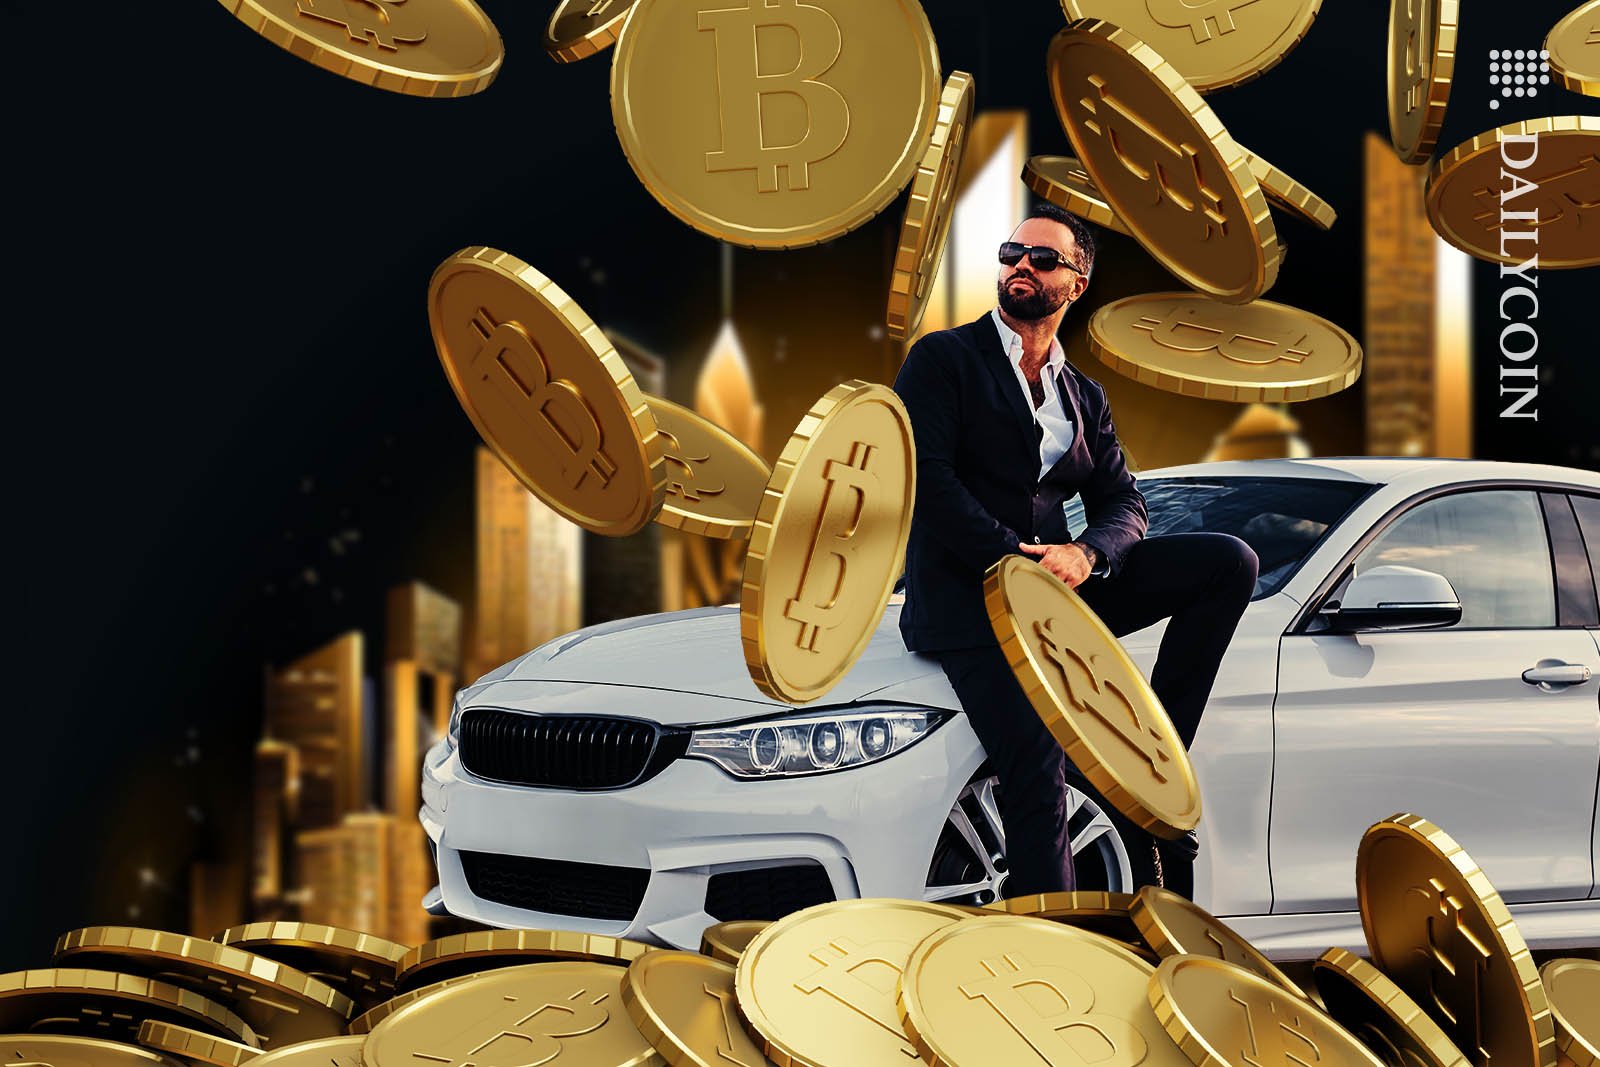 Bitcoin Millionaire enjoying his luxury life.